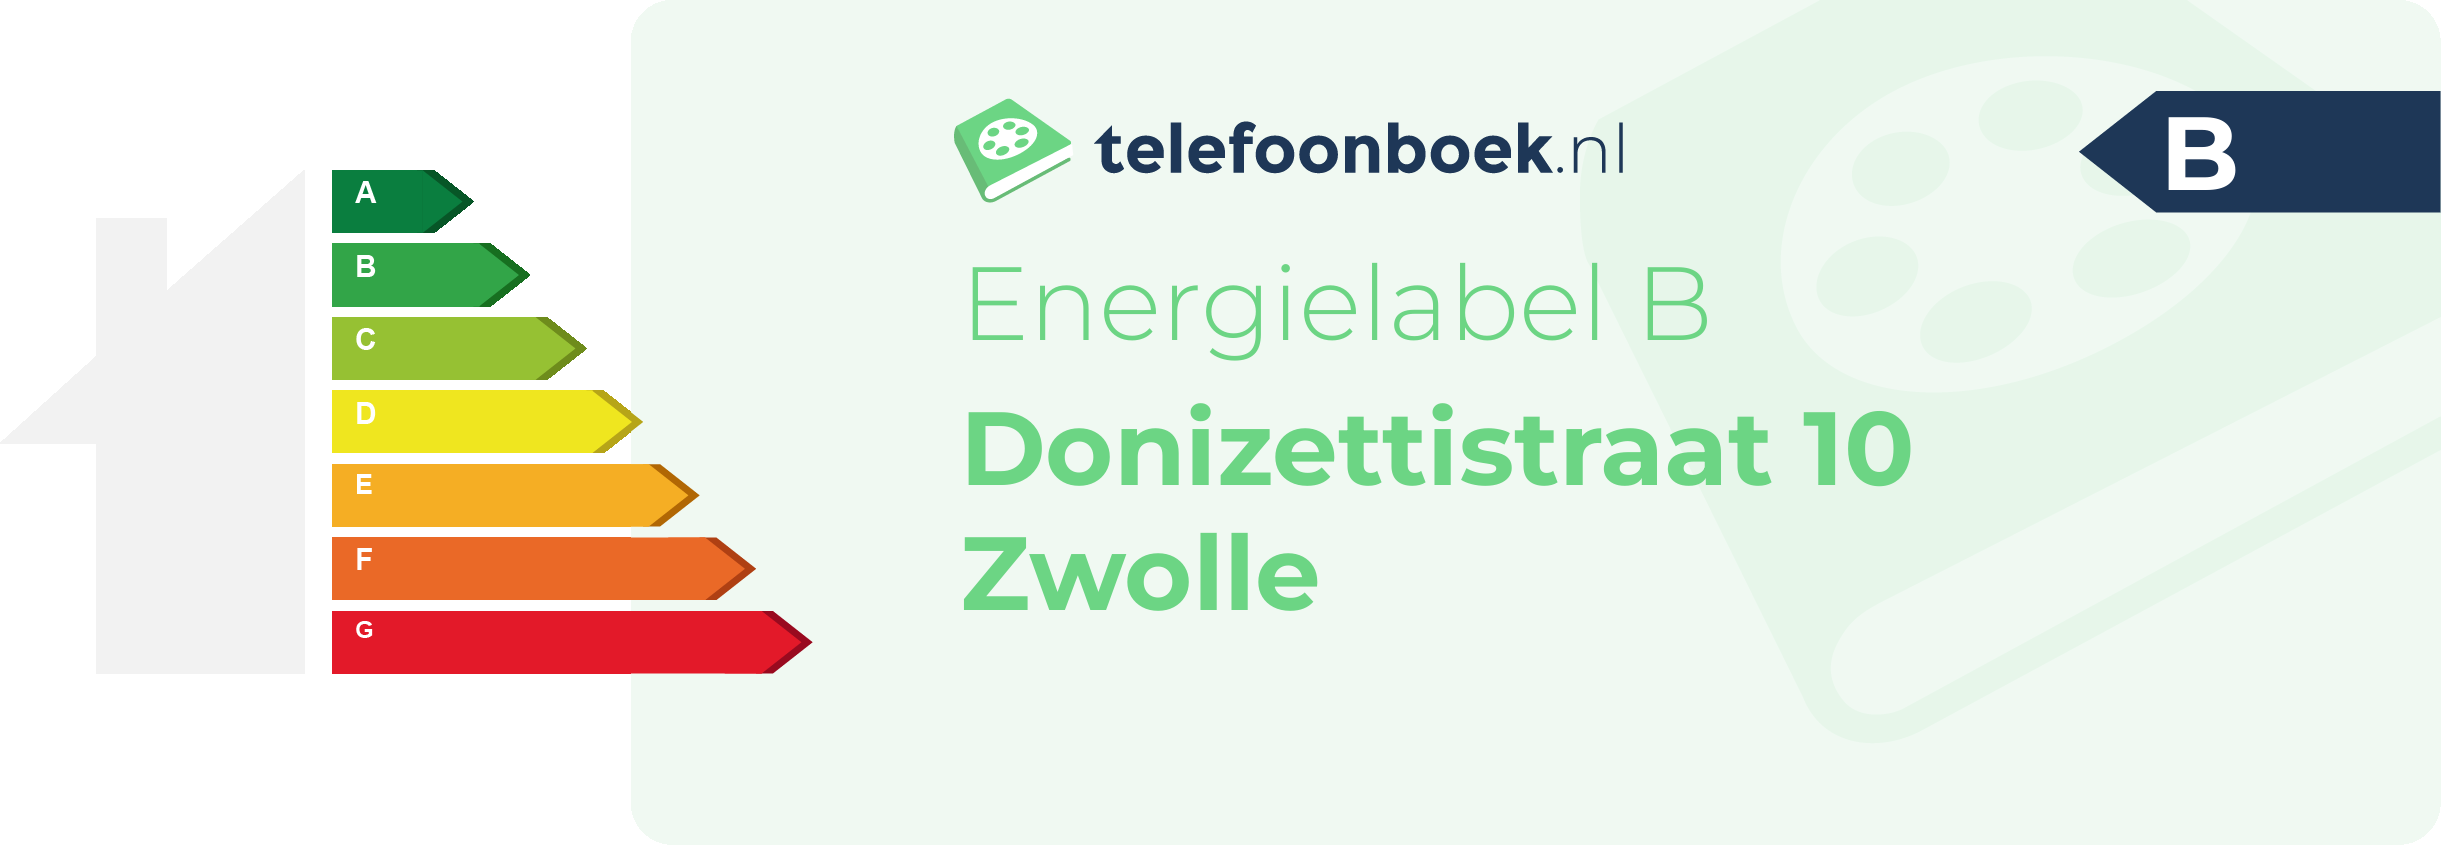 Energielabel Donizettistraat 10 Zwolle